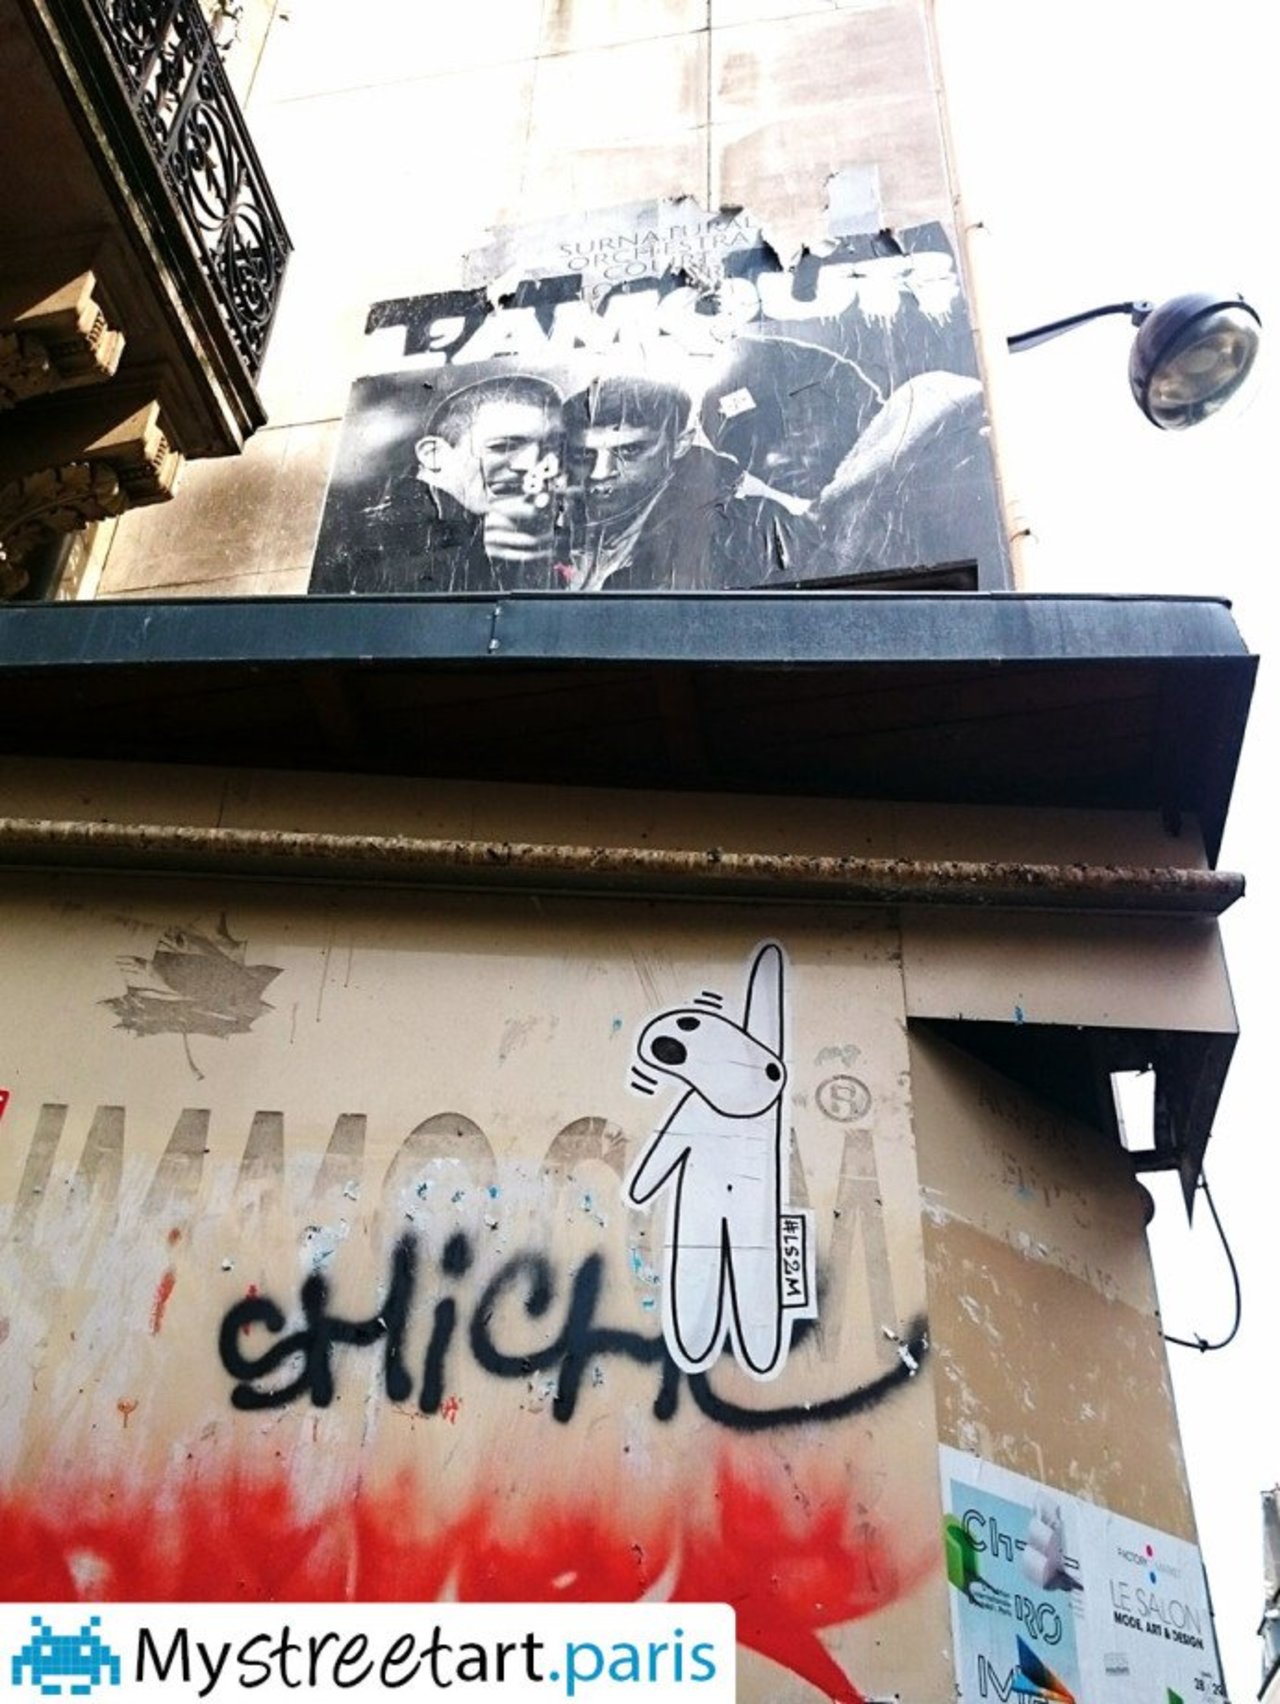 #75010 - http://mystreetart.paris/connaissez-vous-ces-deux-artistes-chateau-deau-75010-paris/ #MyStreetArtParis #streetart #love #graffiti https://t.co/1sm3OYN3aG